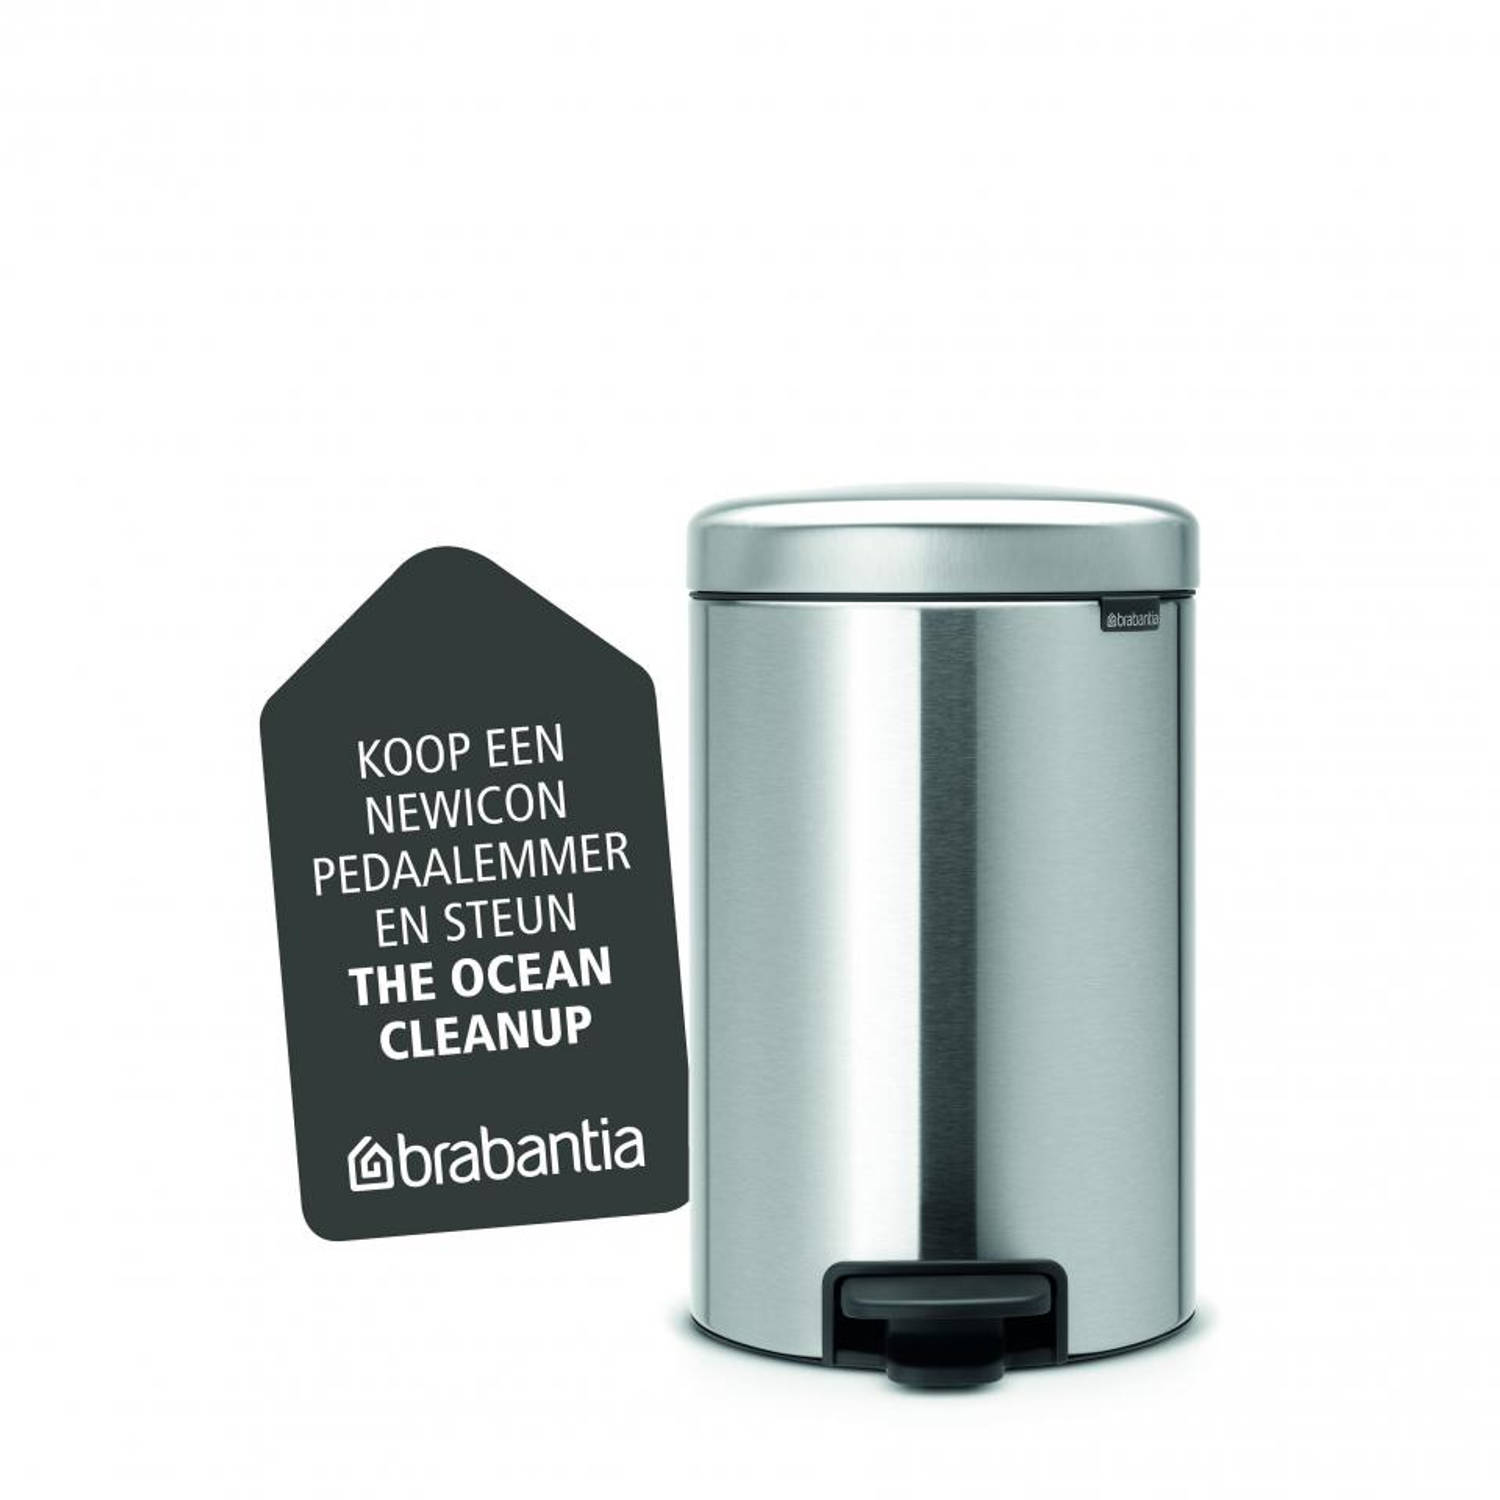 Heer prioriteit T Brabantia newIcon pedaalemmer 12 liter met kunststof binnenemmer - Matt  Steel | Blokker